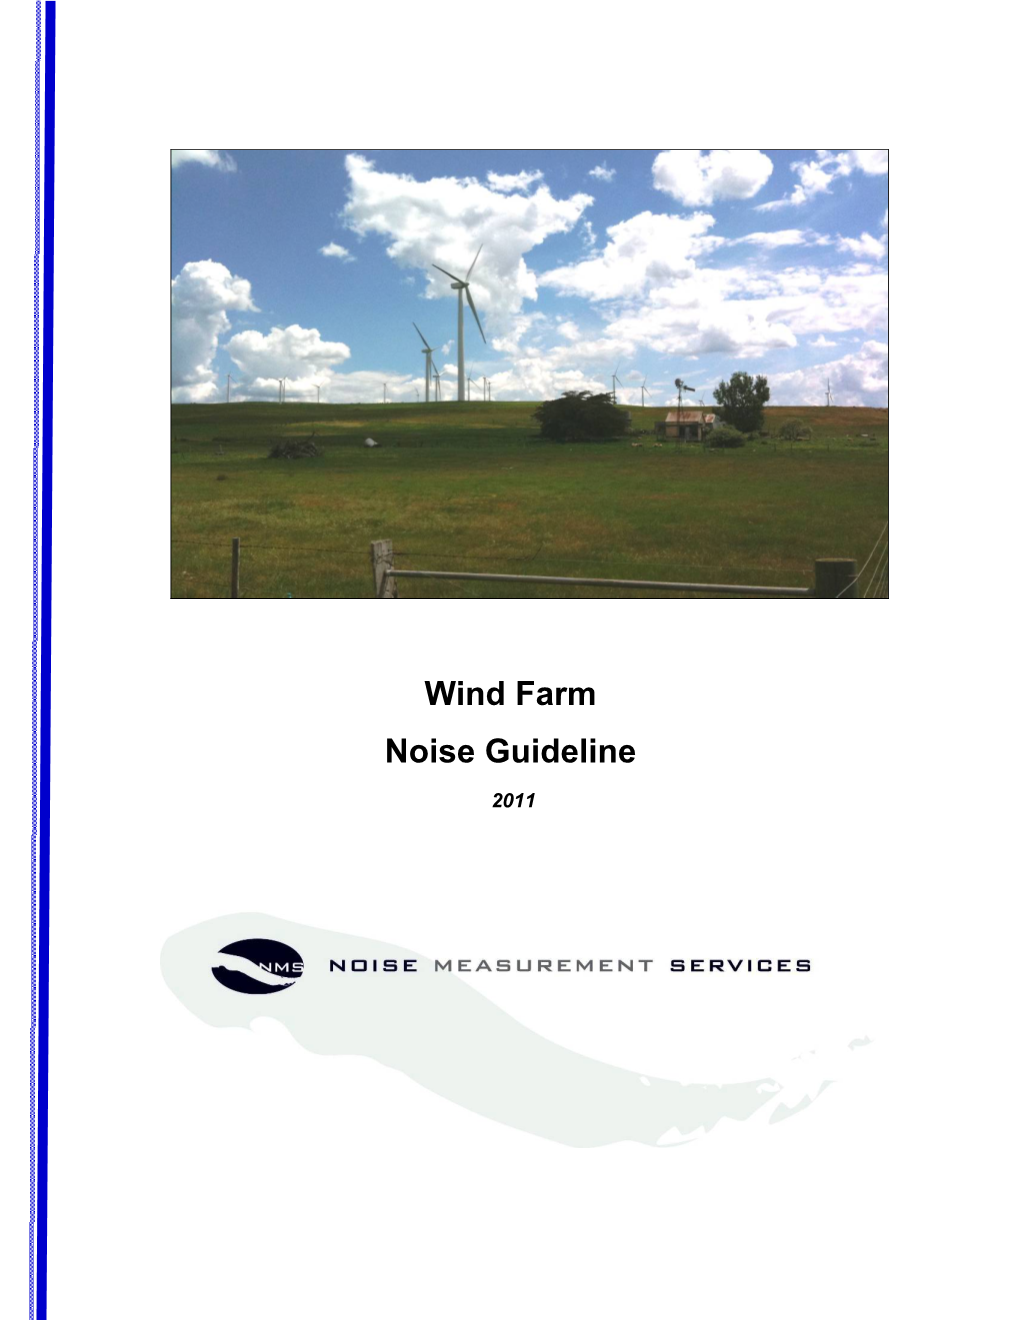 Wind Farm Noise Guideline